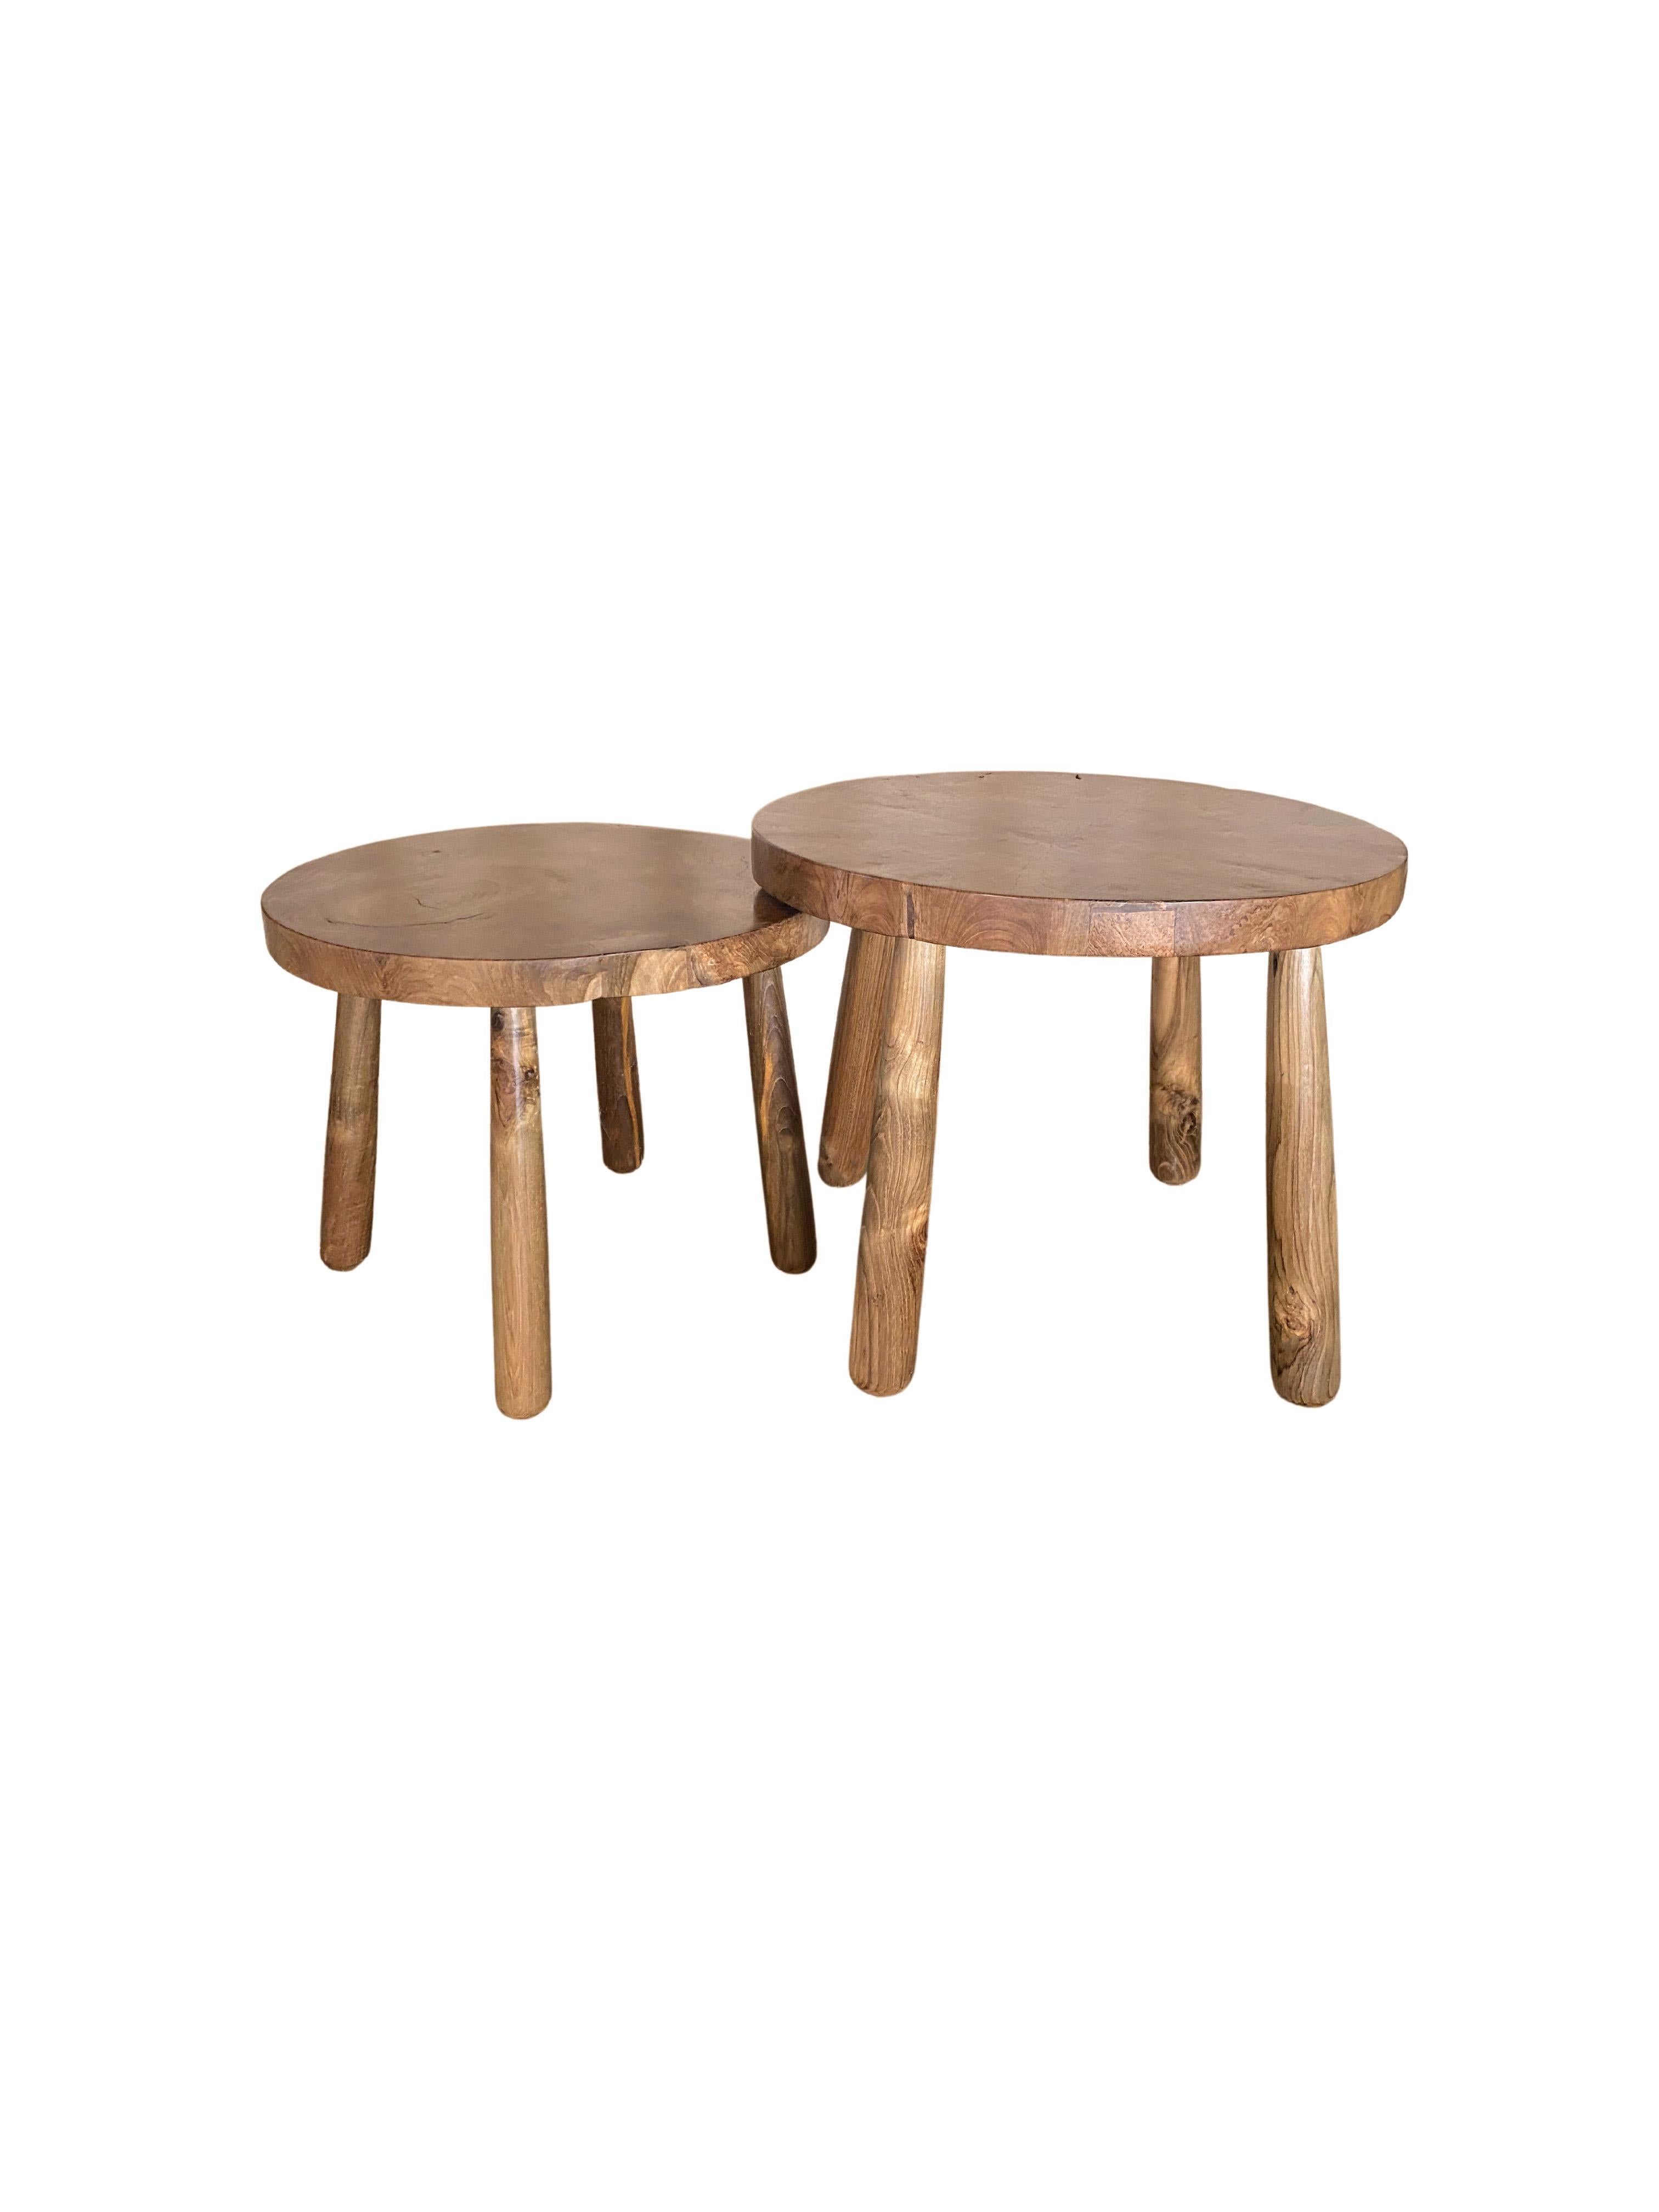 Set of Sculptural Teak Burl Wood Side Tables For Sale at 1stDibs